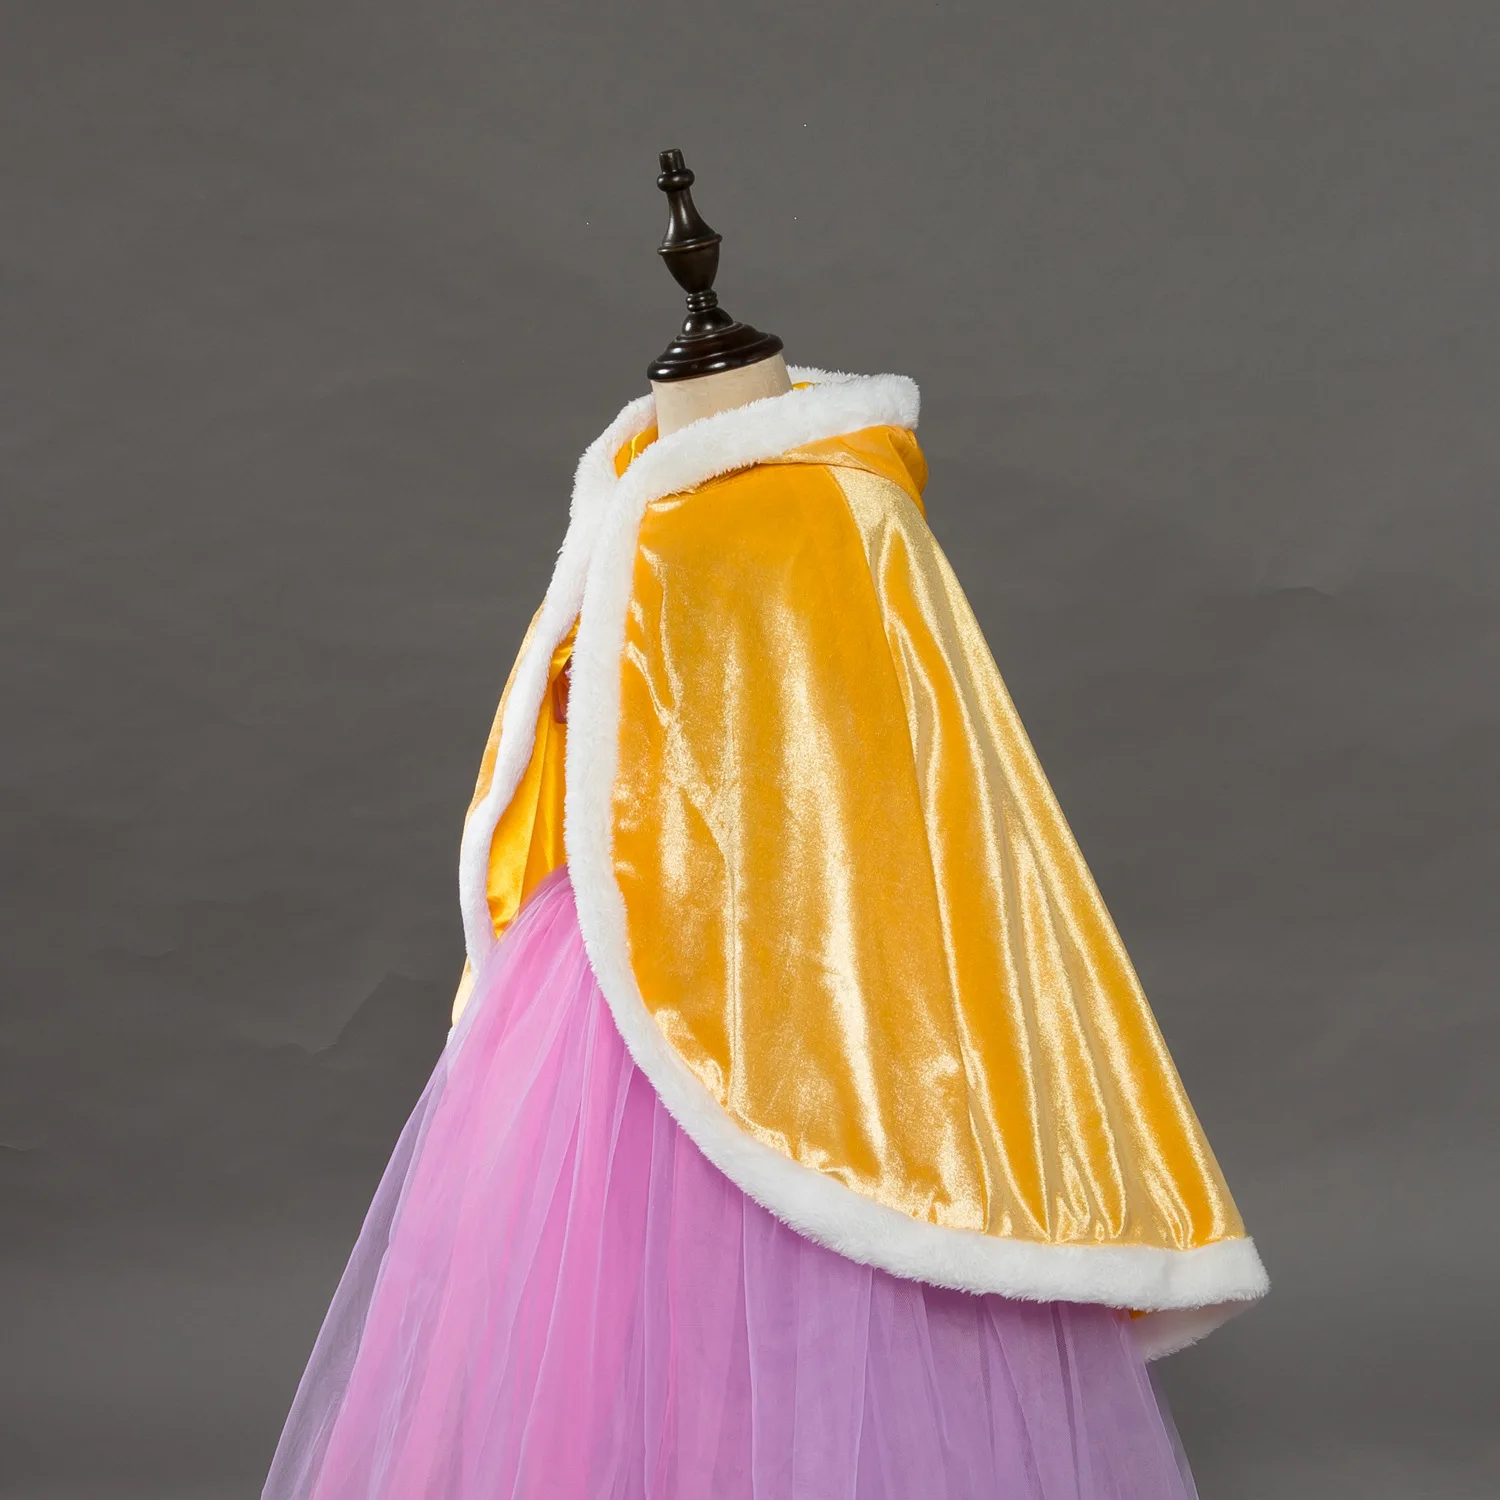 Детская одежда; Осенняя верхняя одежда; костюм принцессы с капюшоном; цвет красный, желтый, розовый, синий; бархатная накидка для детей; пончо и накидки для девочек